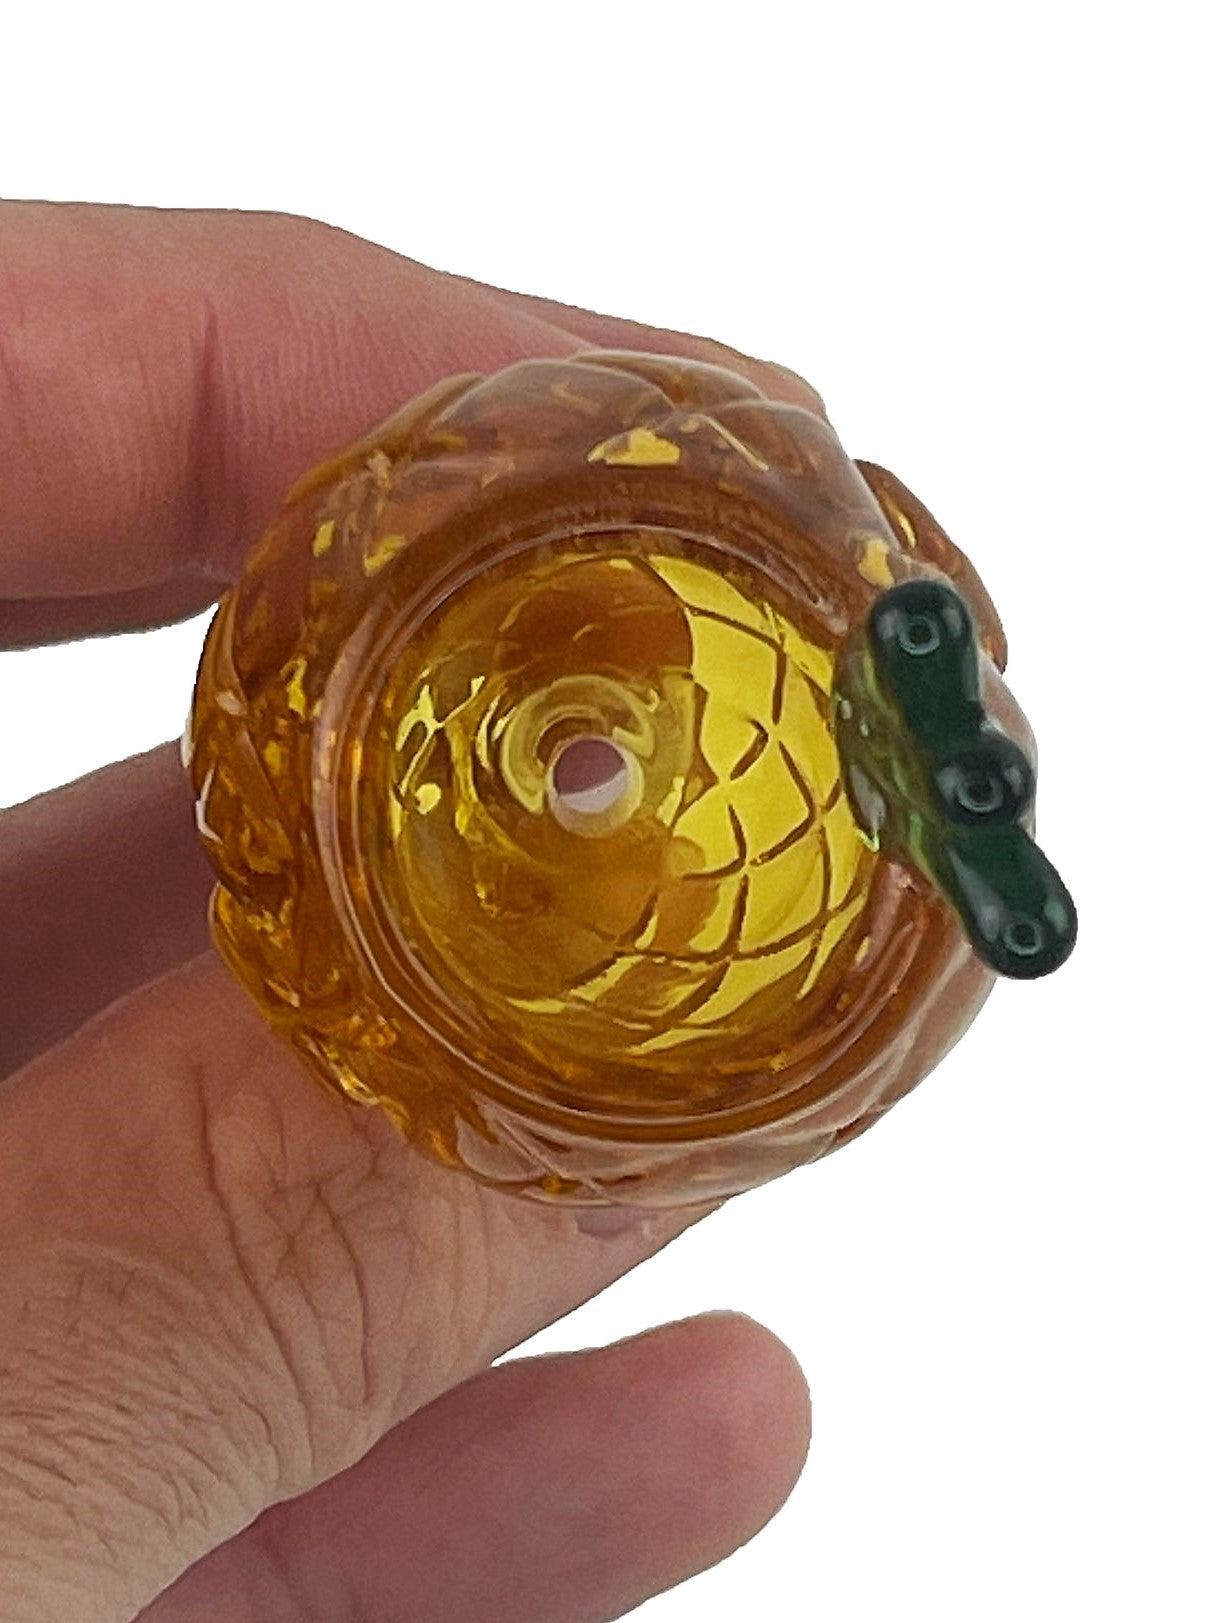 Pineapple Glass Bong Bowl - 14mm Daze Glass